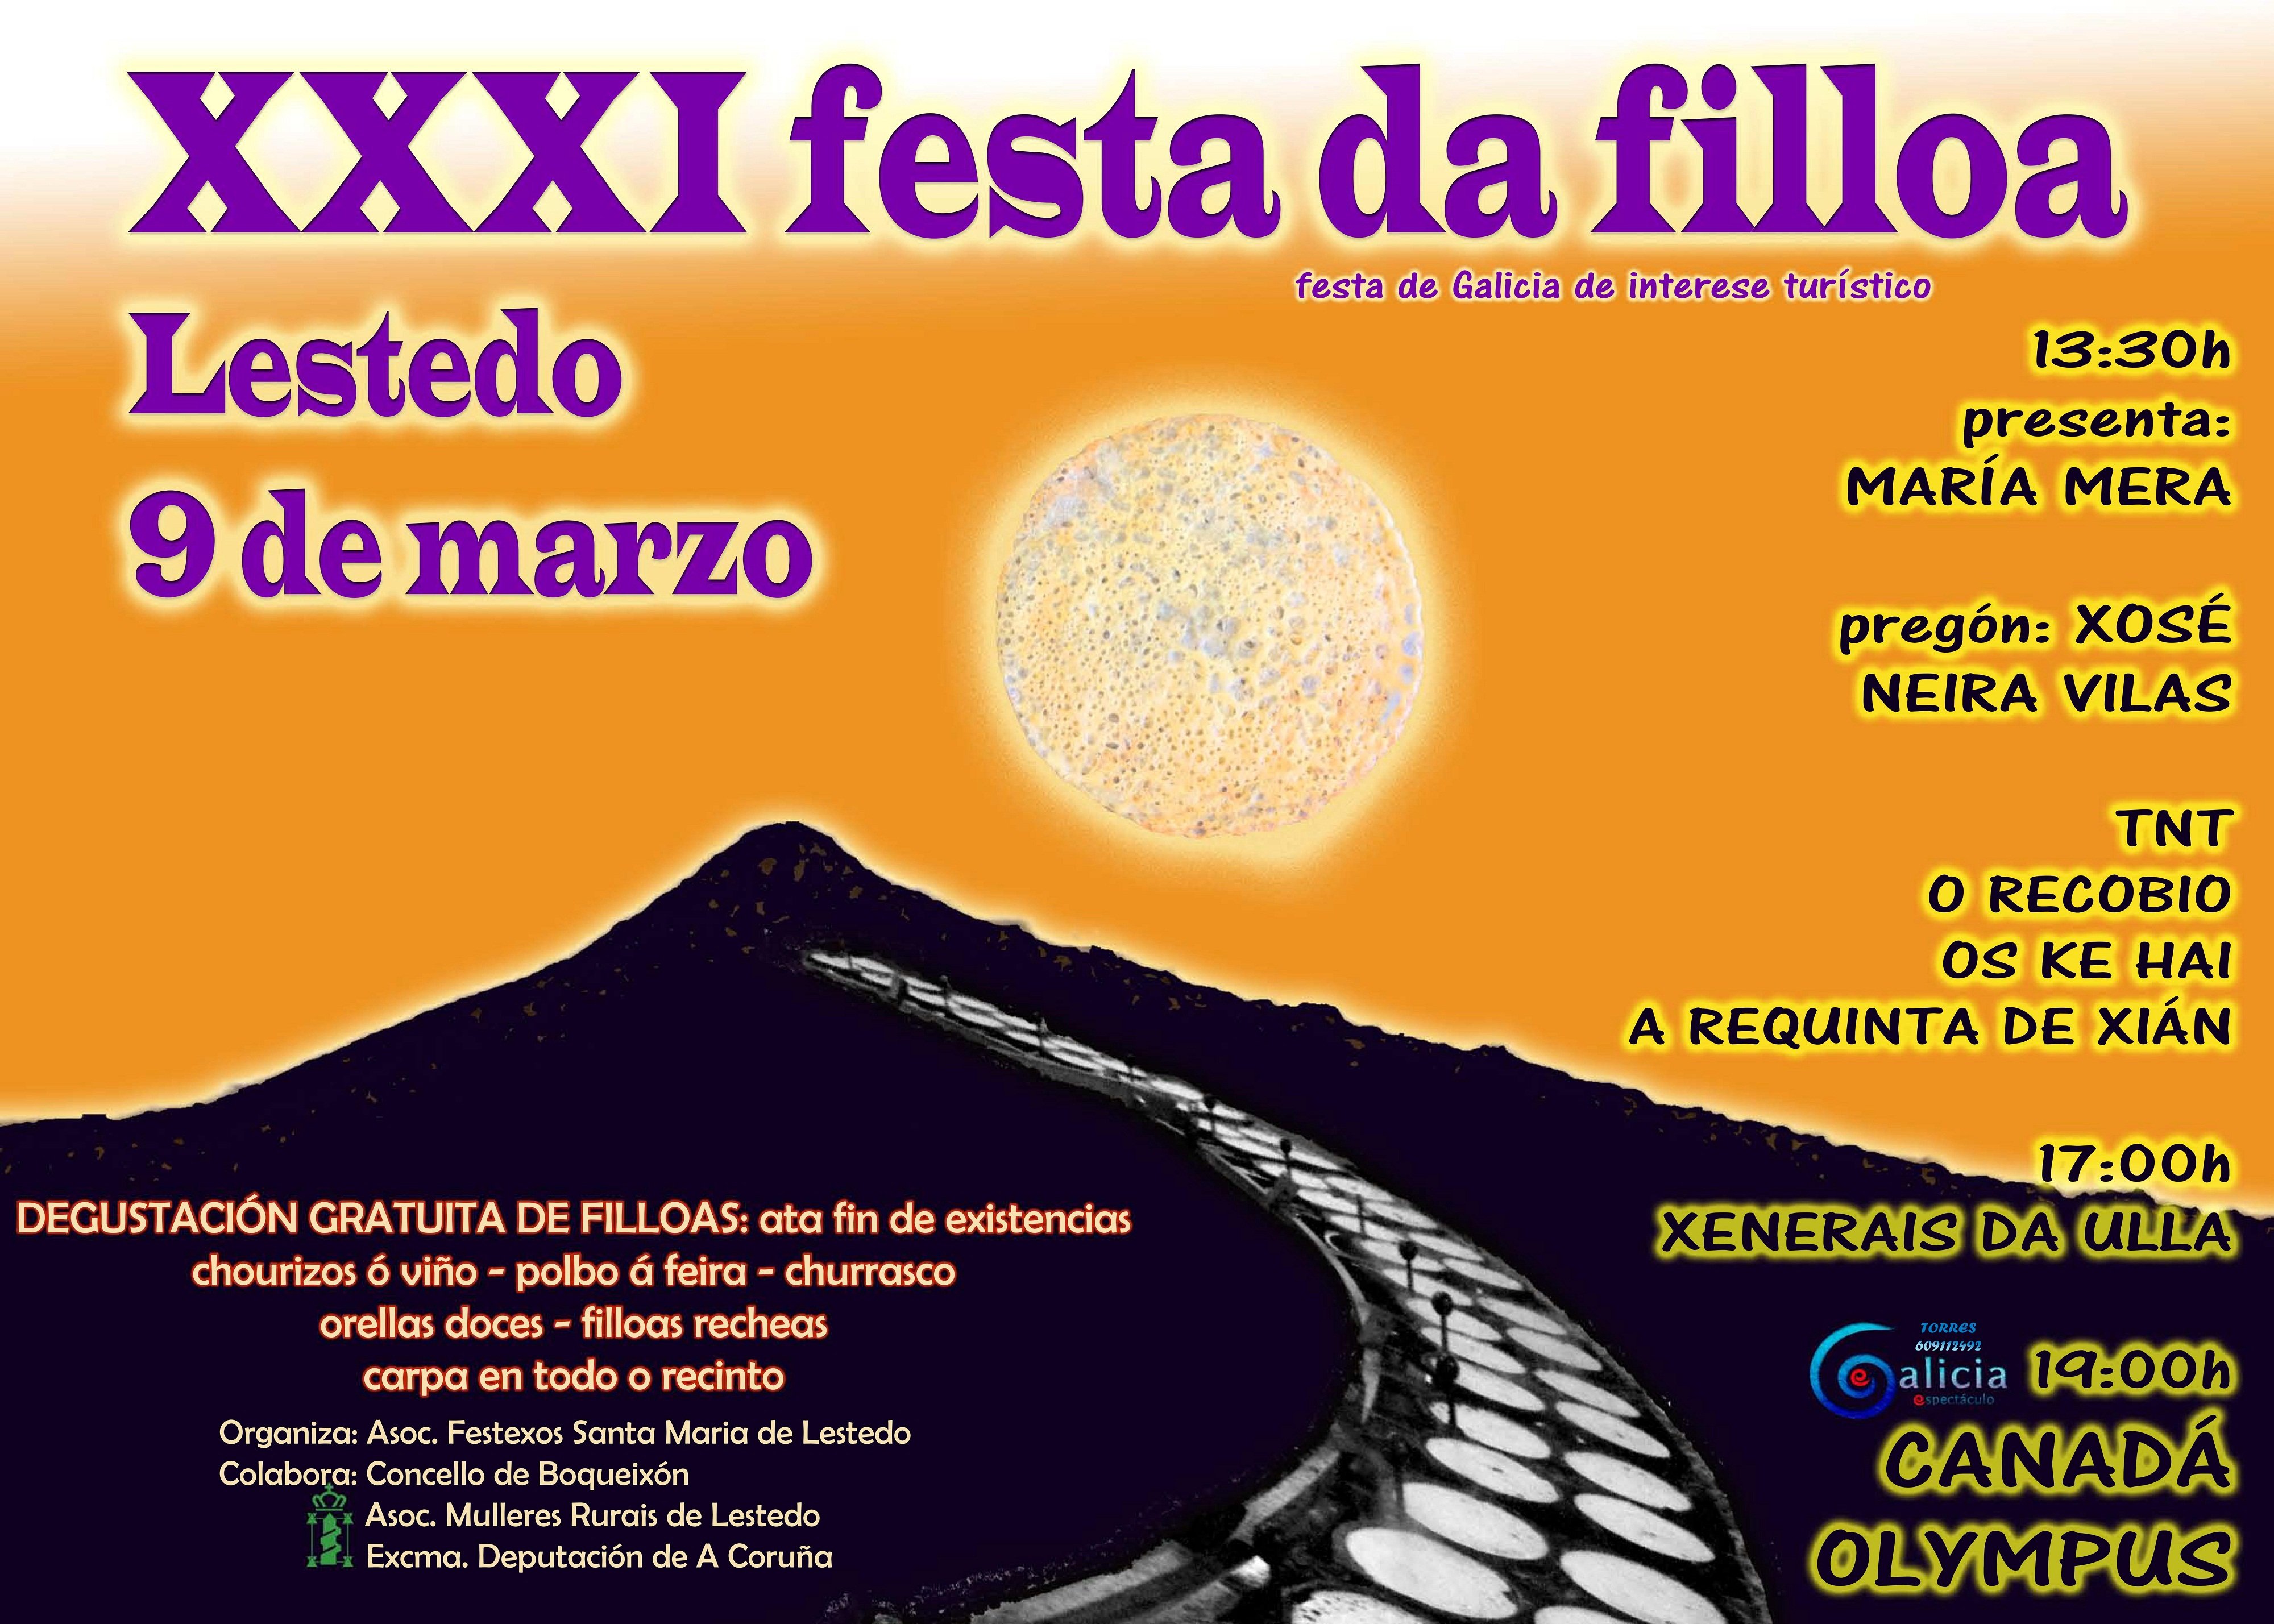 CARTEL DEFINITIVO XXXI FESTA DA FILLOA